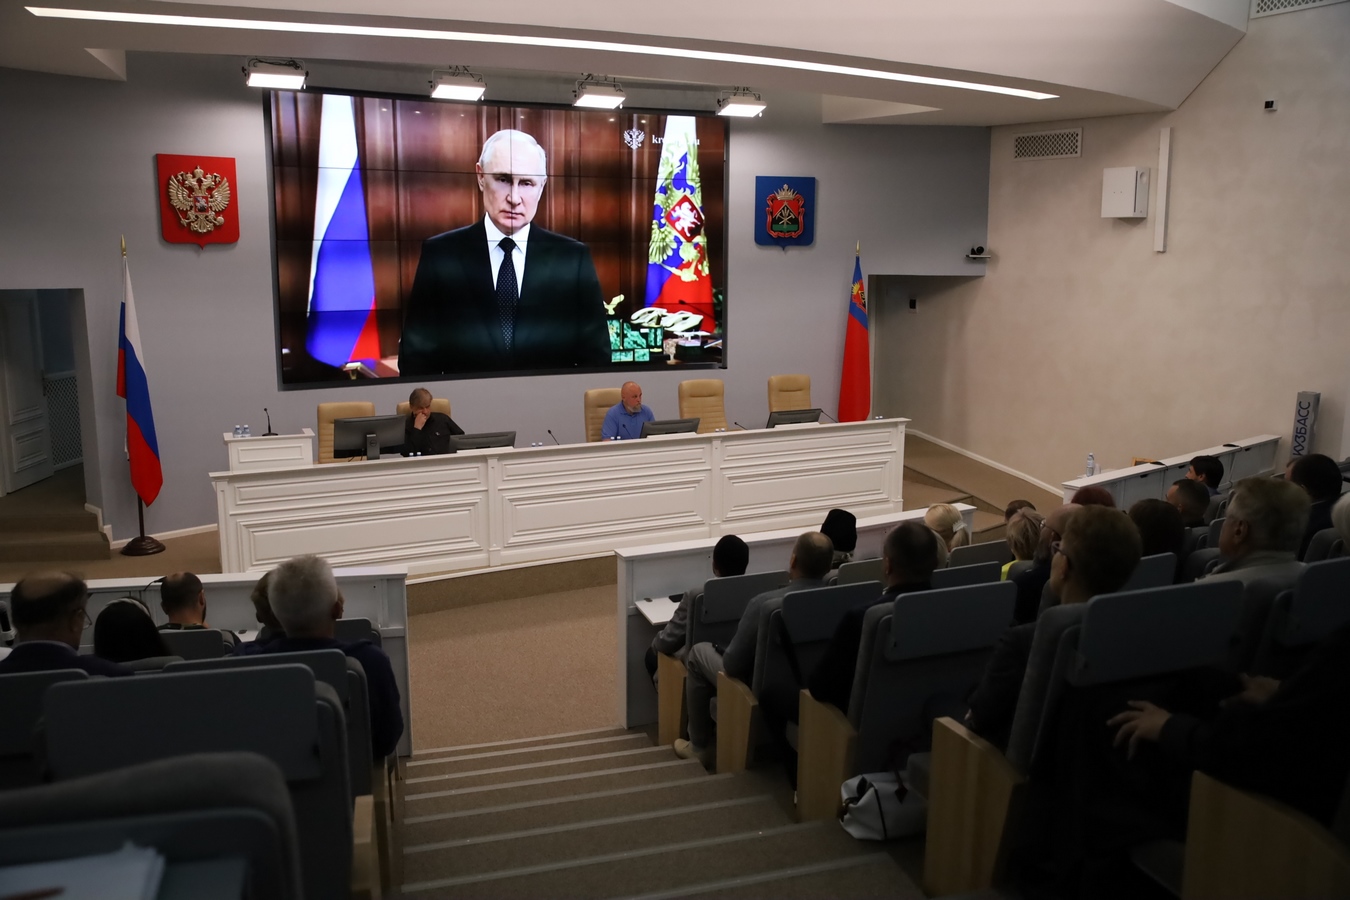 Сергей Цивилев: мы должны сплотиться вокруг Президента для защиты страны